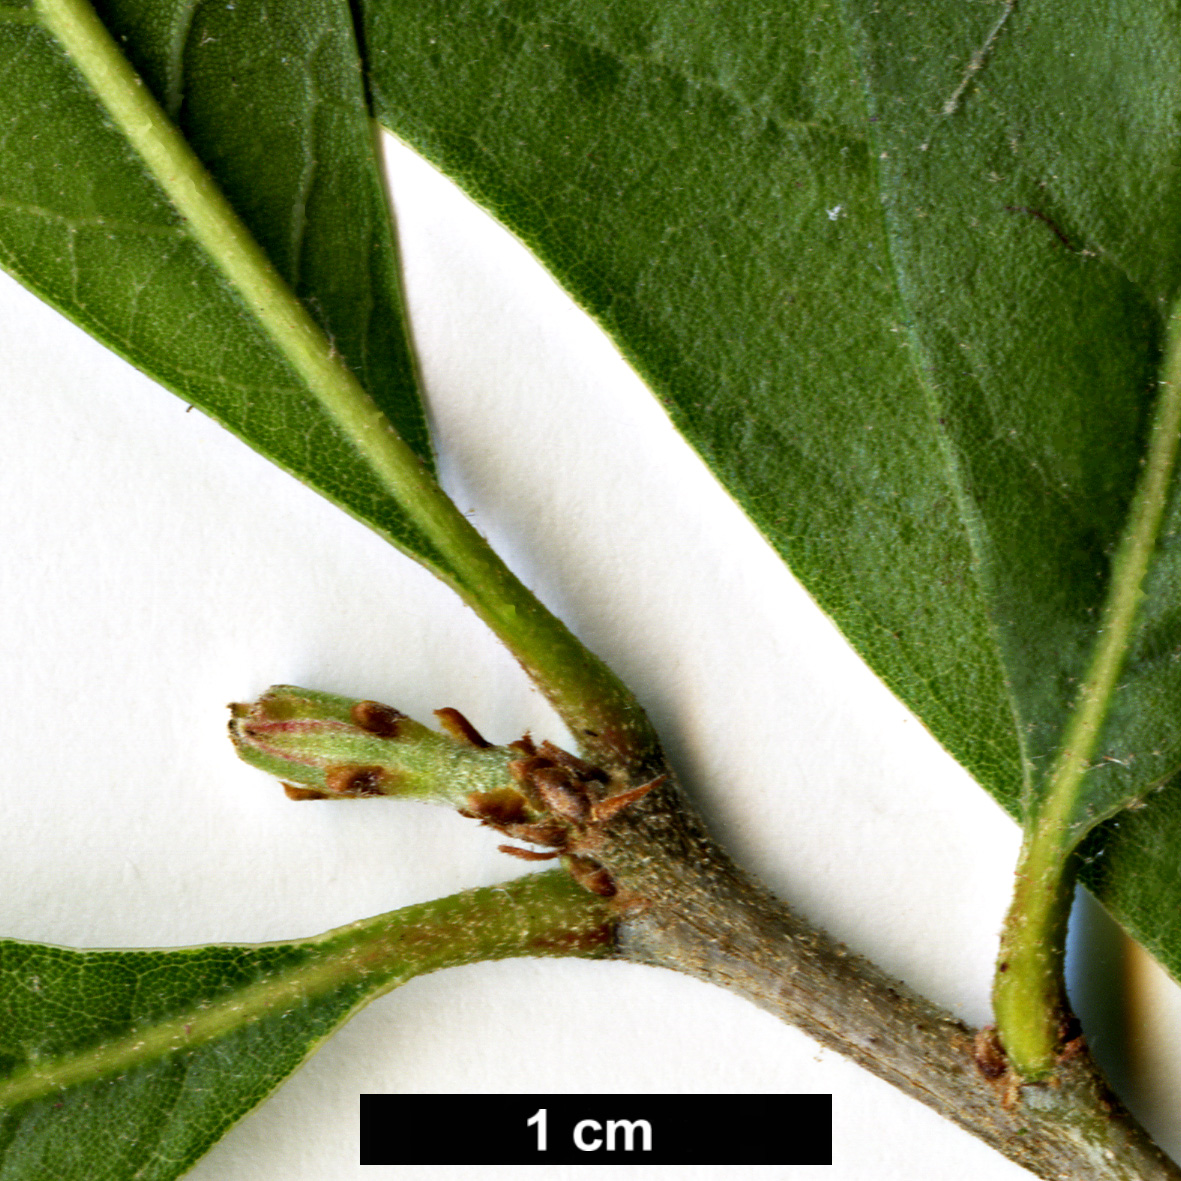 High resolution image: Family: Fagaceae - Genus: Quercus - Taxon: oleoides - SpeciesSub: subsp. sagraeana